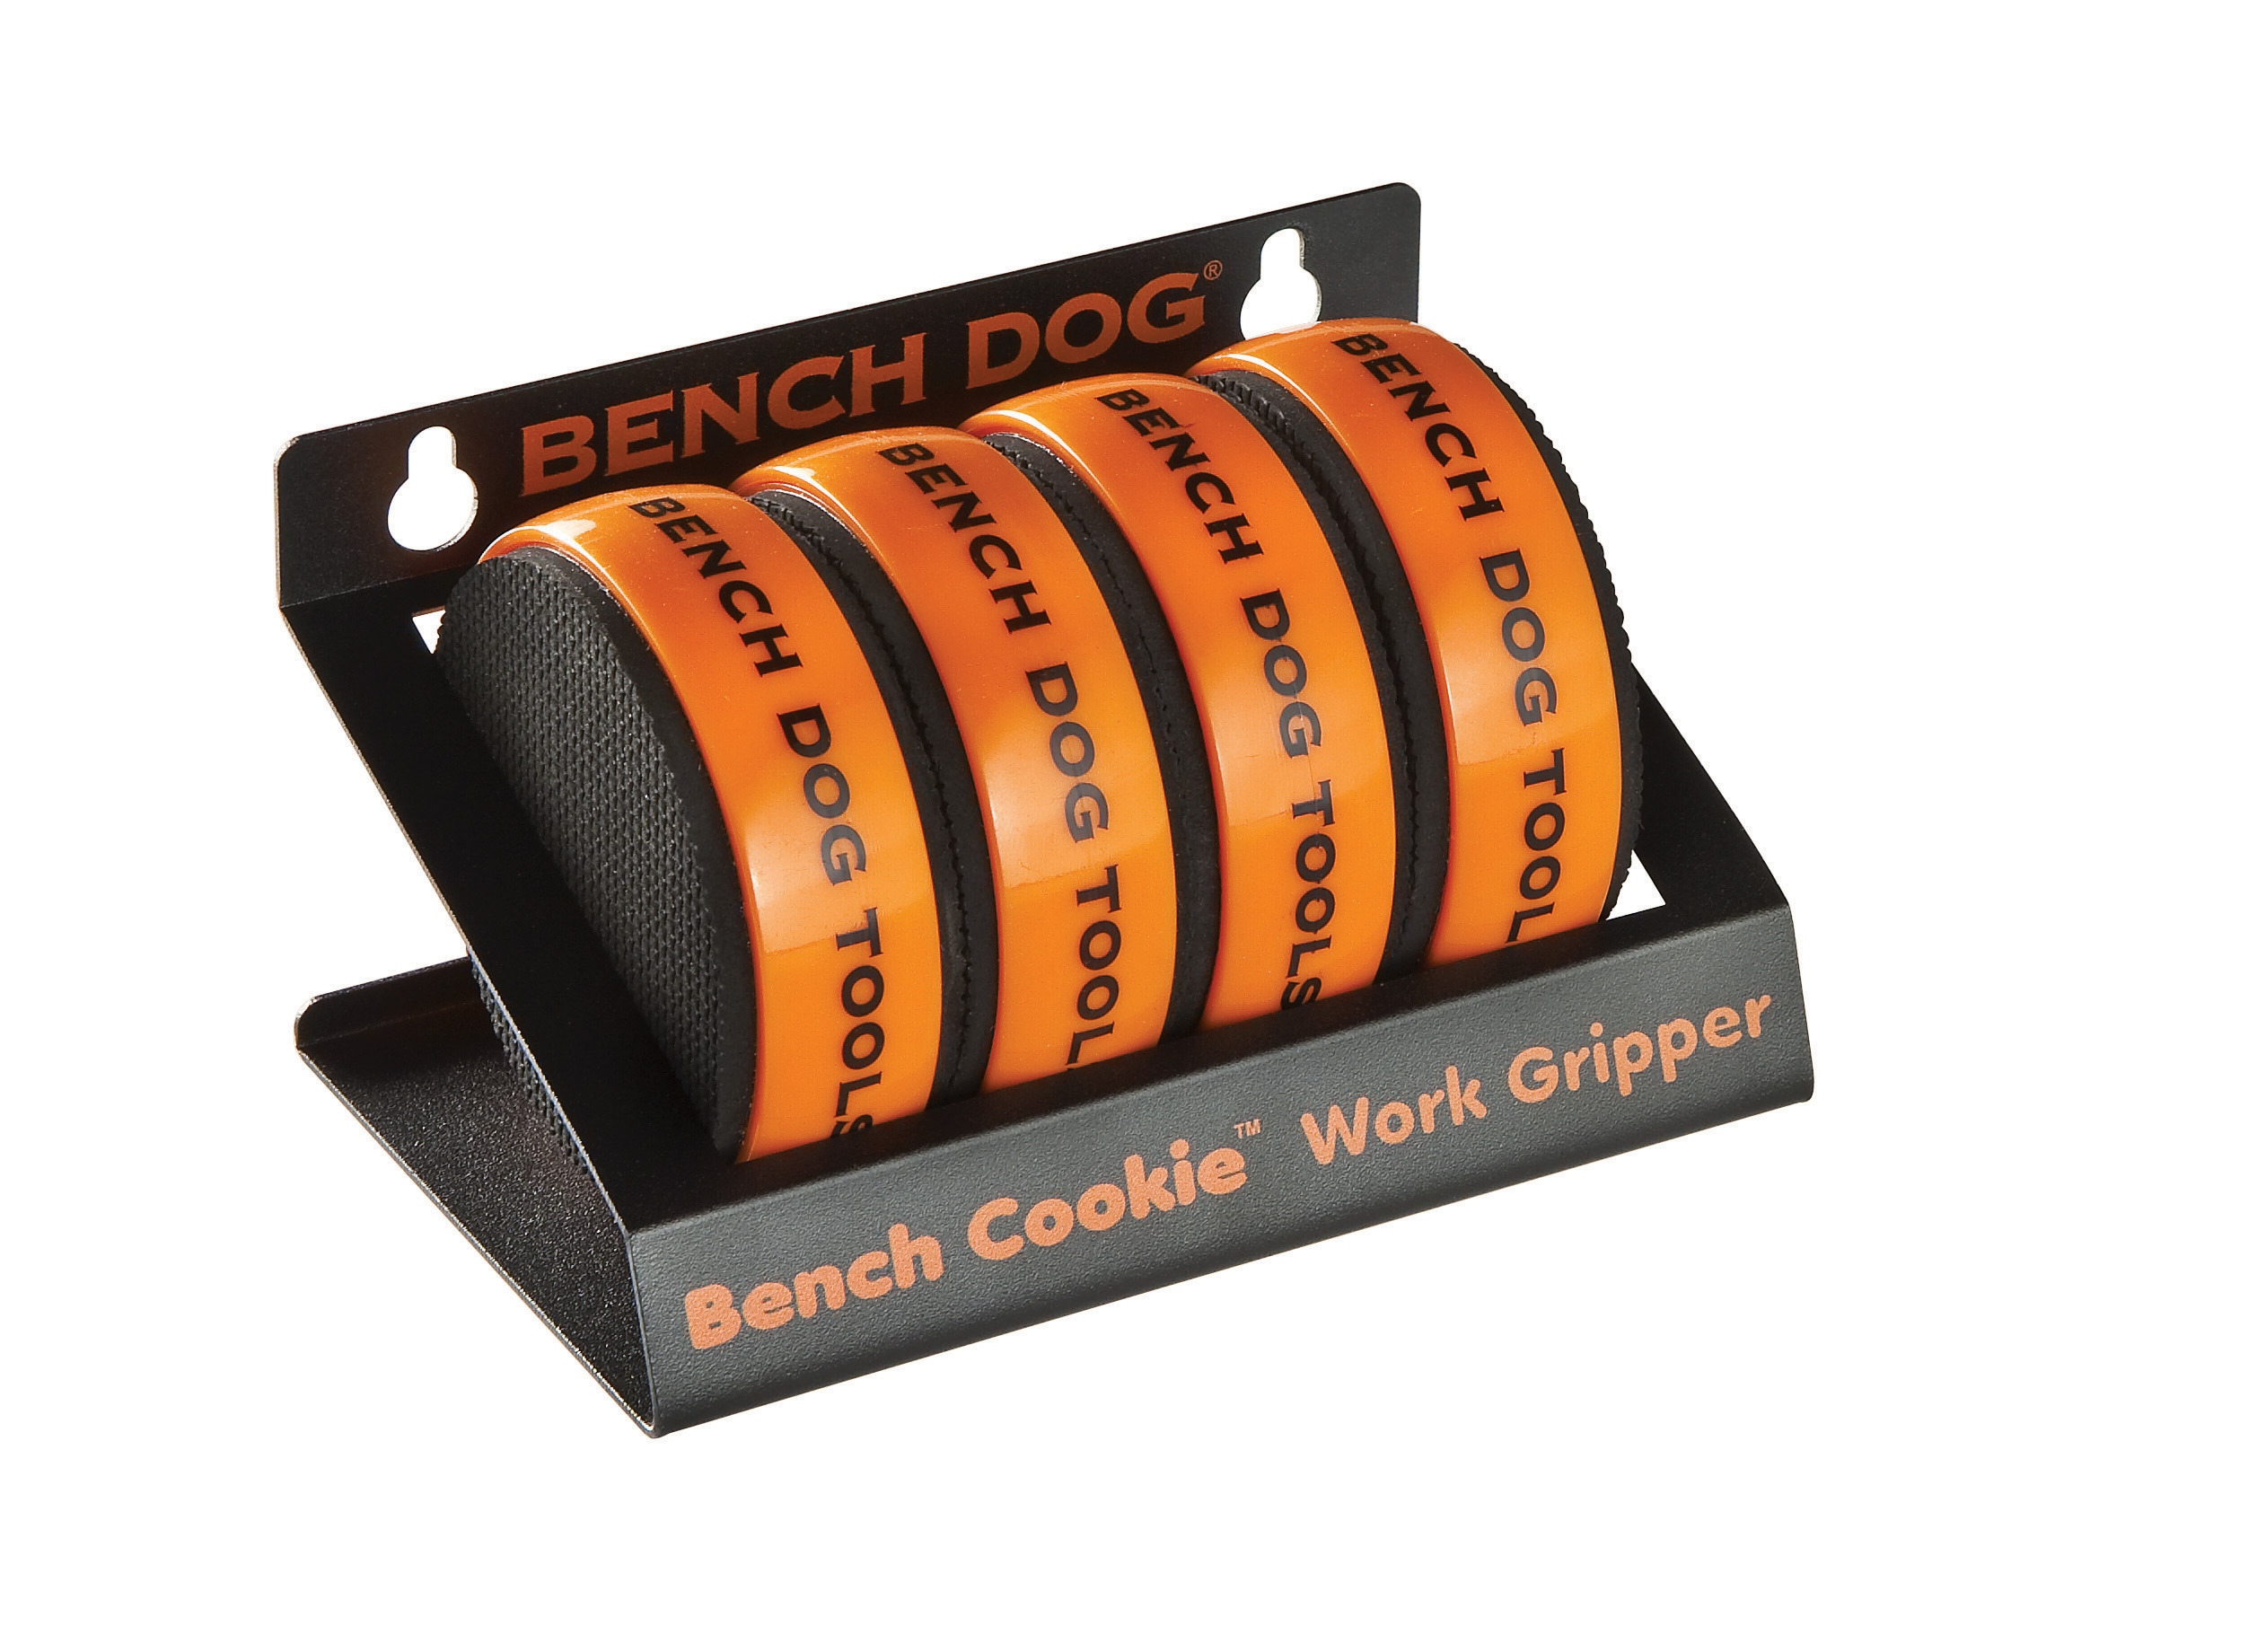 BENCH DOG Cookies Werkstückstopper 4 Stück Antirutschmatte Gummimatte NEU 989466 